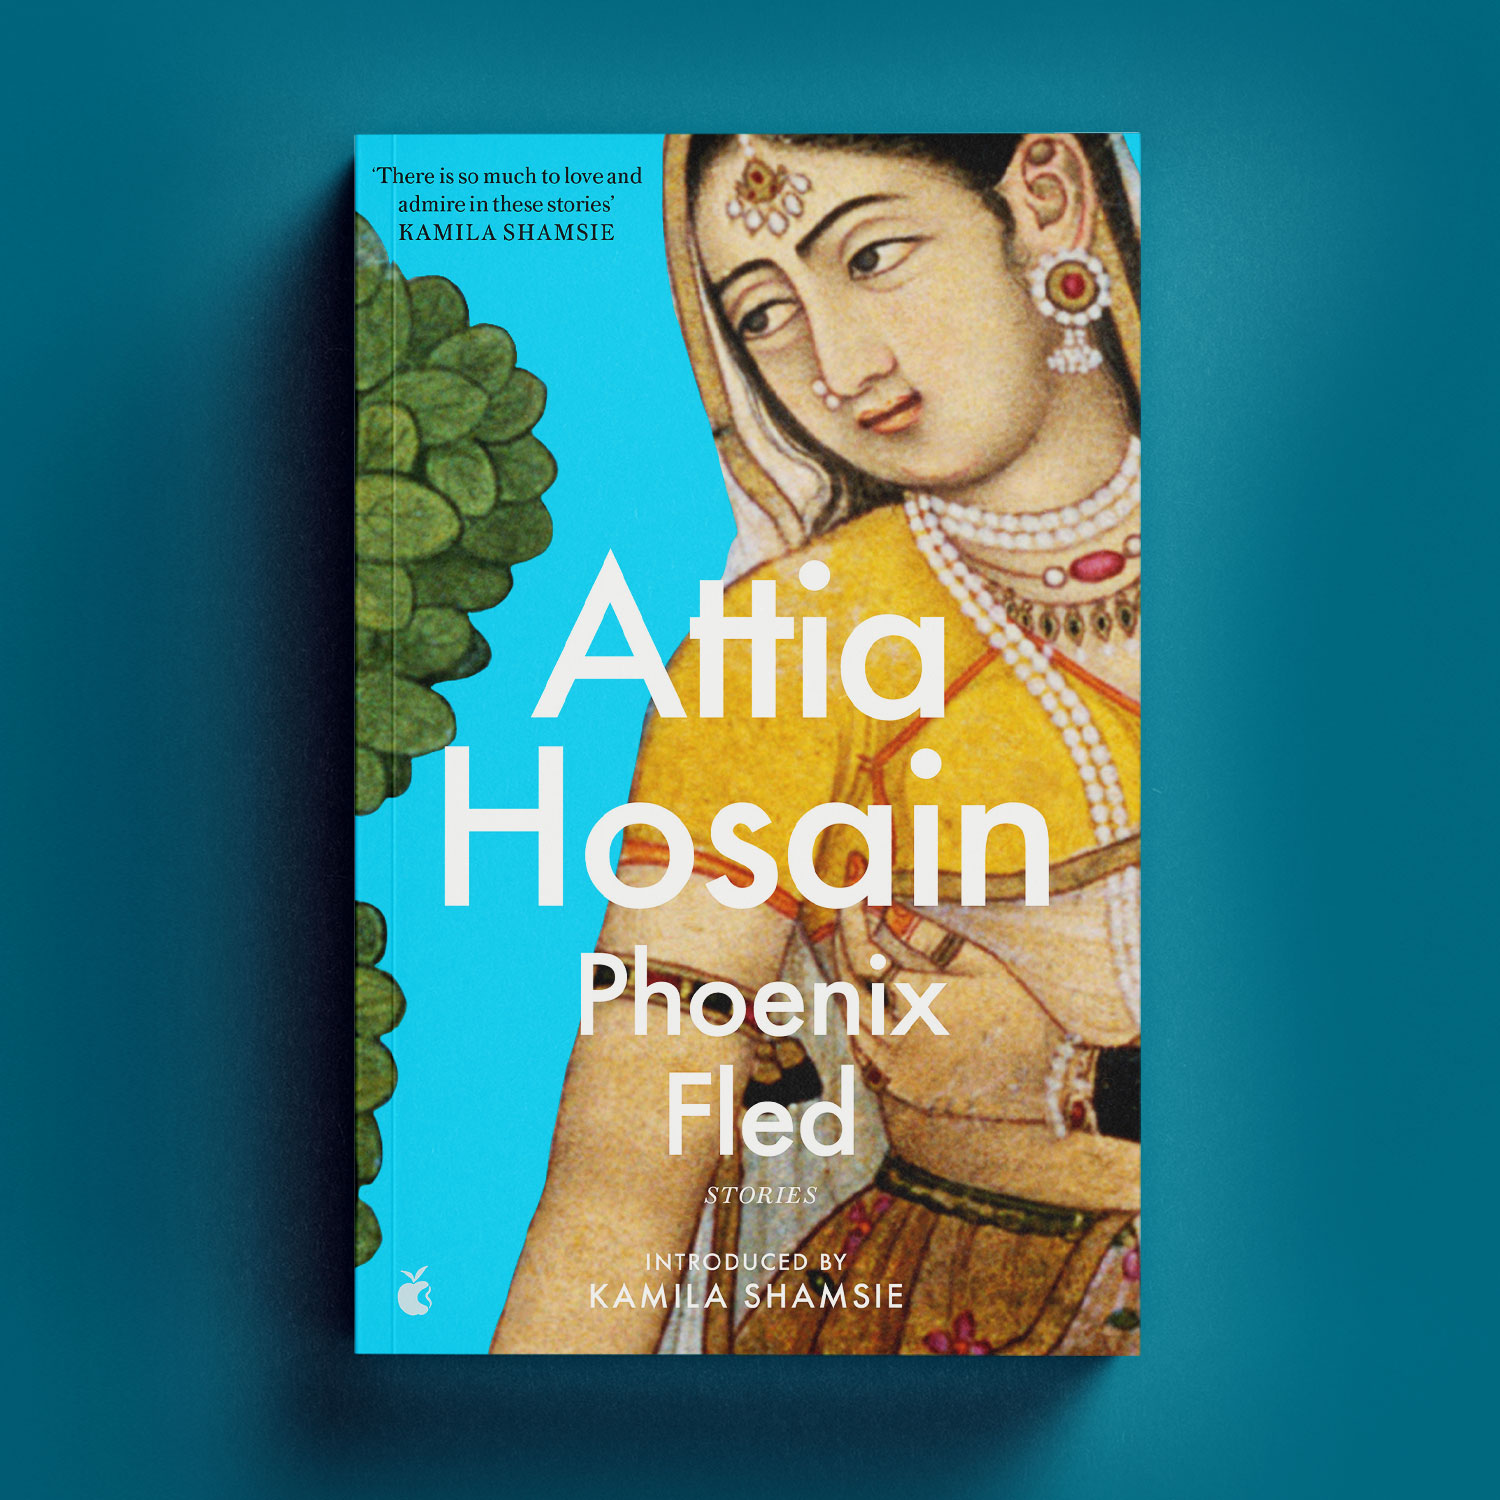 Phoenix Fled by Attia Hosain